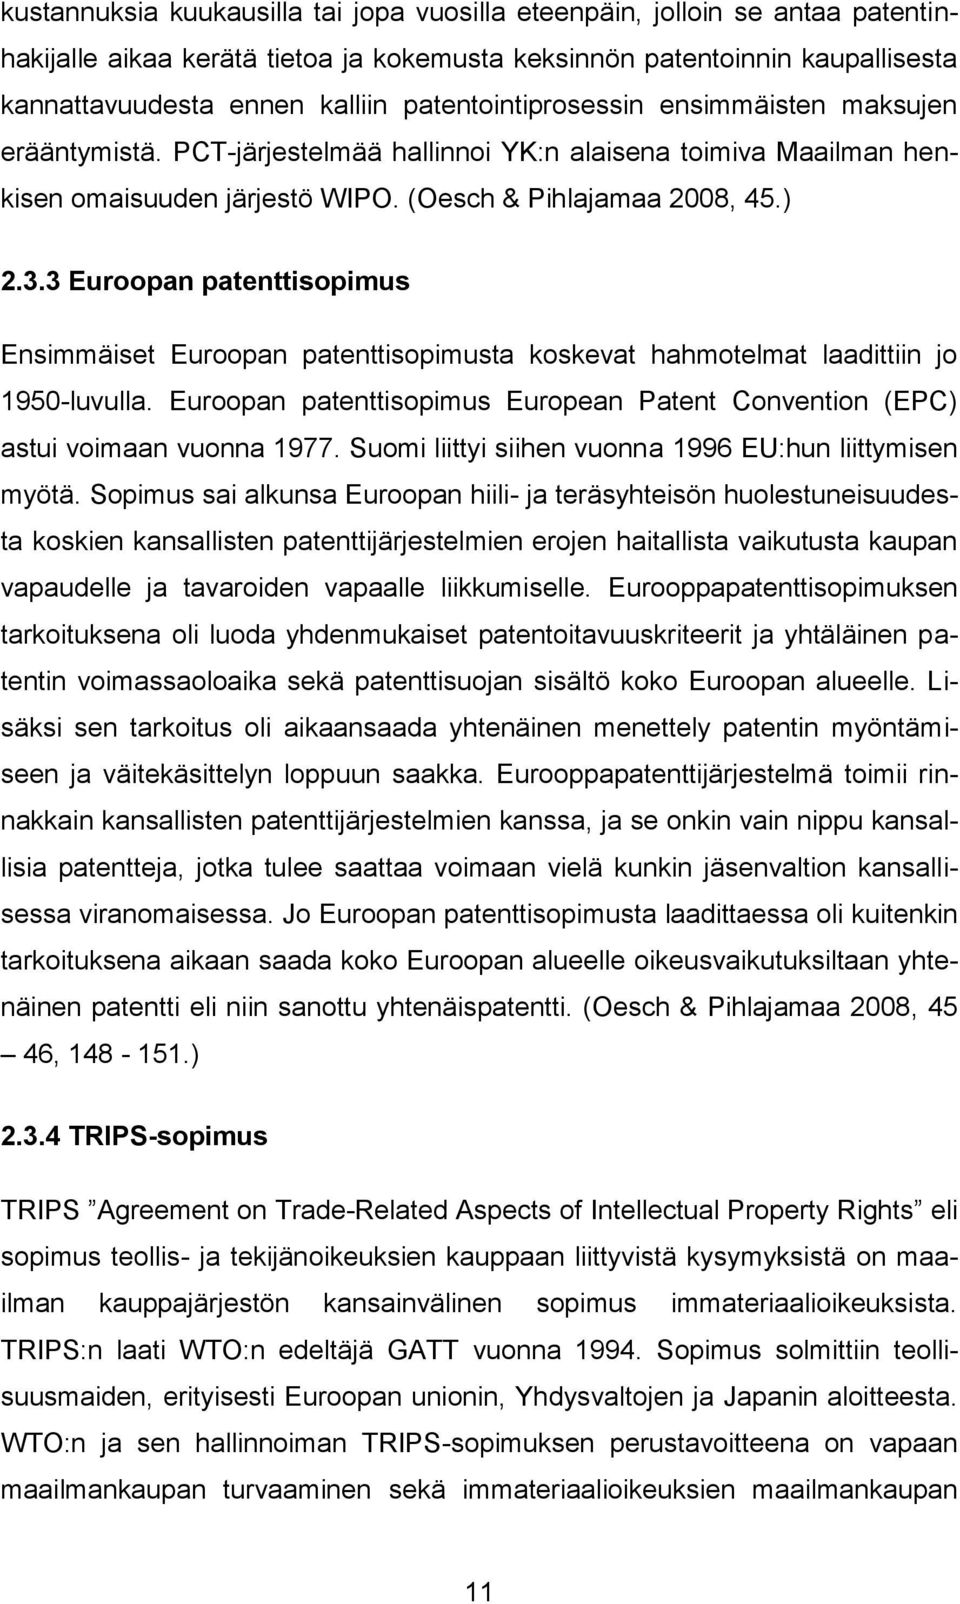 3 Euroopan patenttisopimus Ensimmäiset Euroopan patenttisopimusta koskevat hahmotelmat laadittiin jo 1950-luvulla. Euroopan patenttisopimus European Patent Convention (EPC) astui voimaan vuonna 1977.